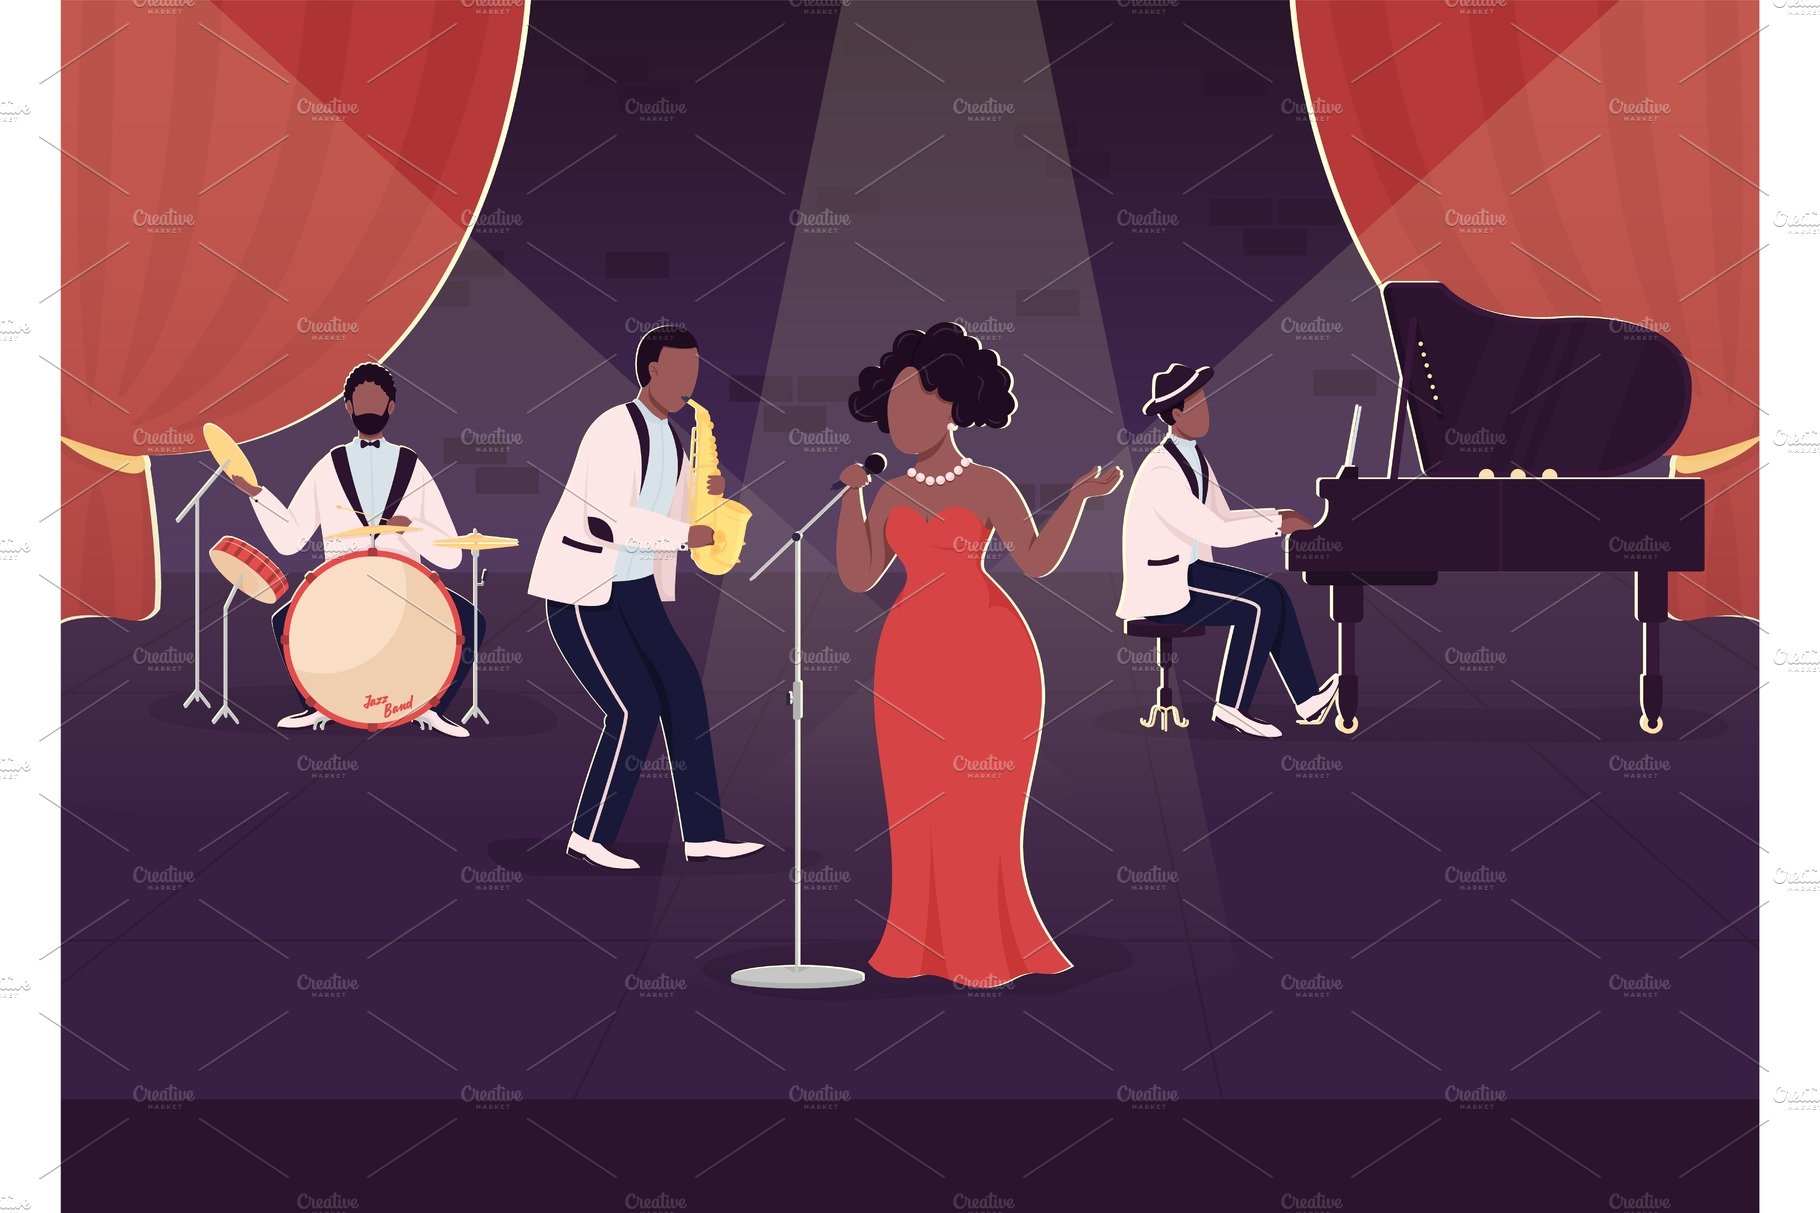 Live jazz band concert illustration cover image.